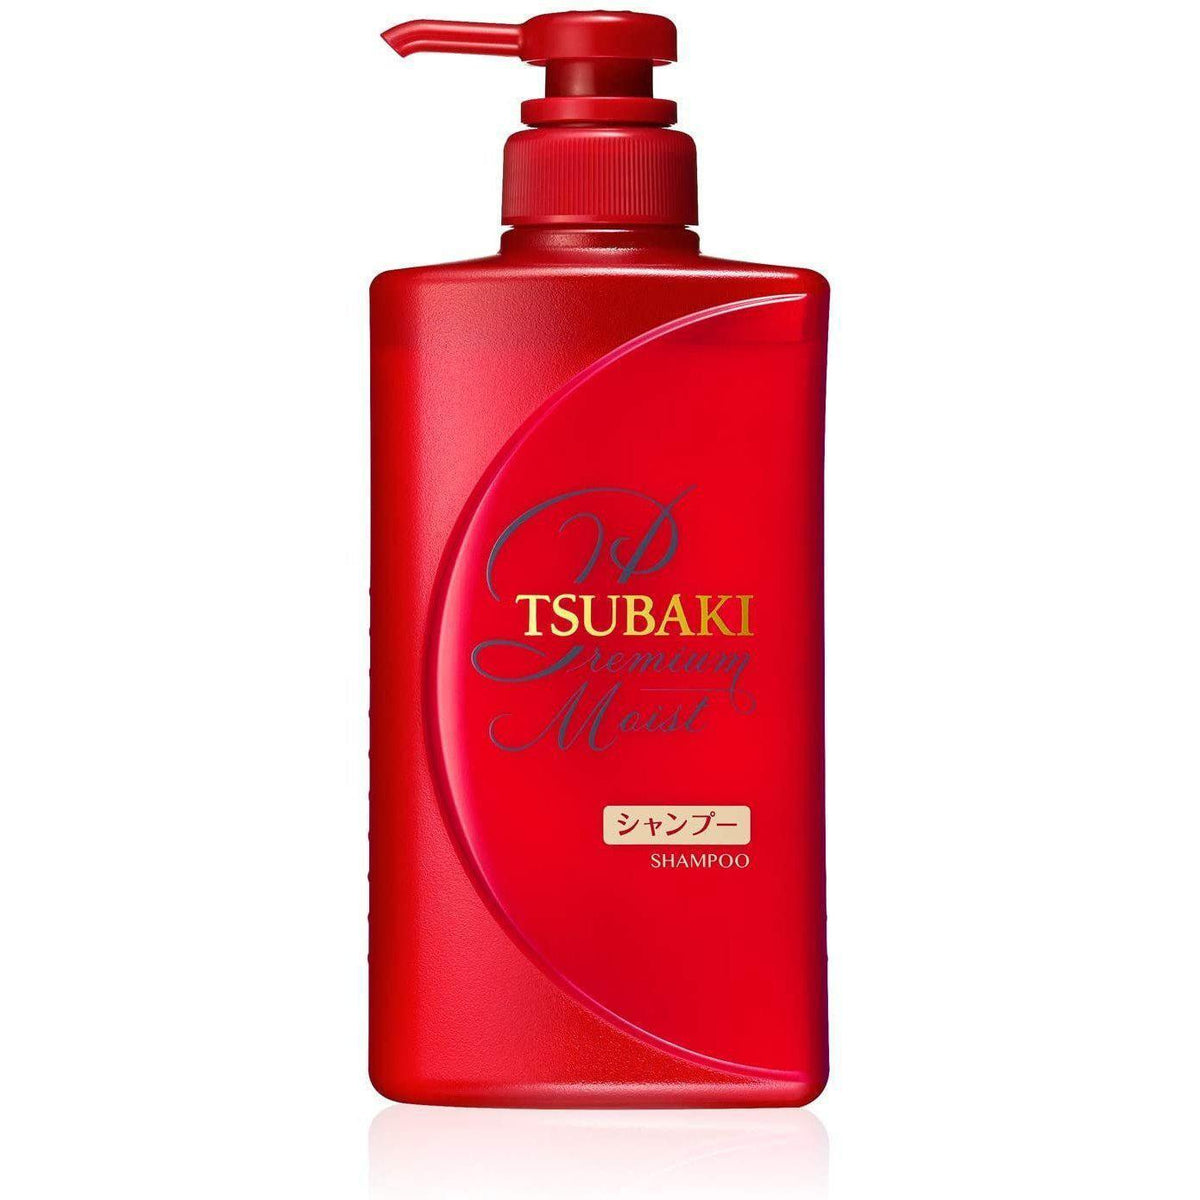 Tsubaki Premium Moist Shampoo 490ml - Calia Australia Pty Ltd